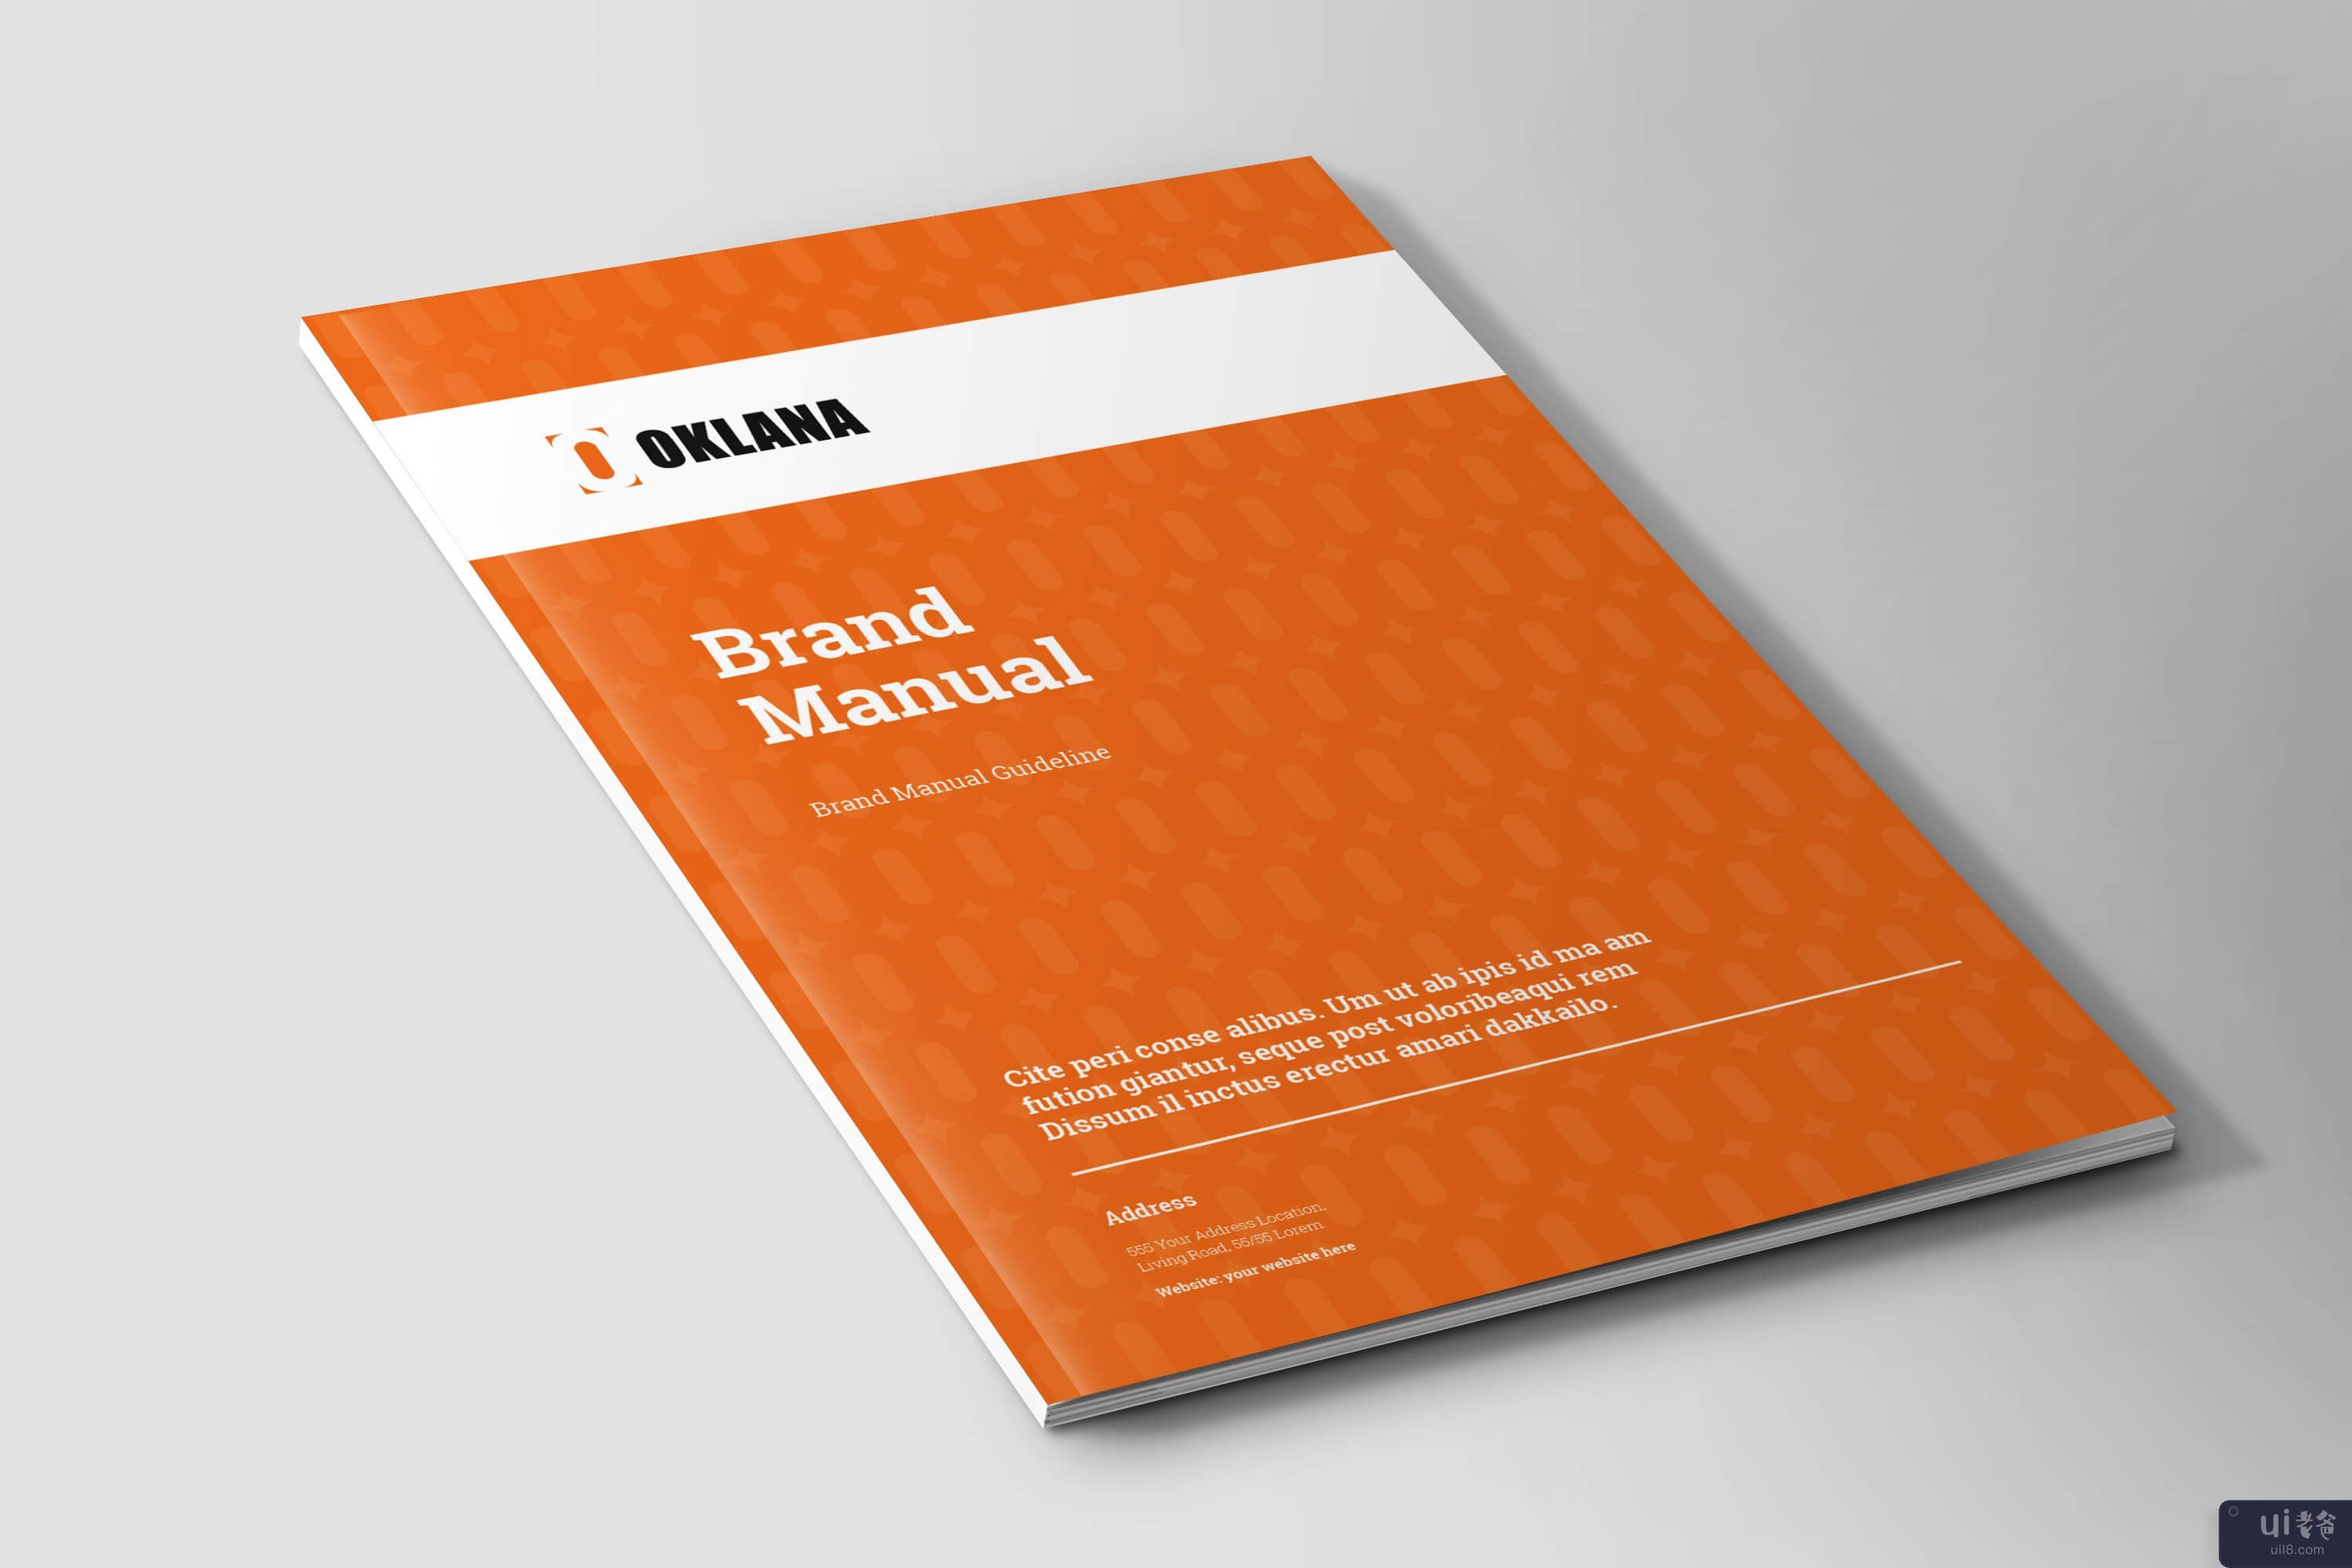 品牌手册指南 | InDesign 模板(Brand Manual Guideline | InDesign Template)插图1